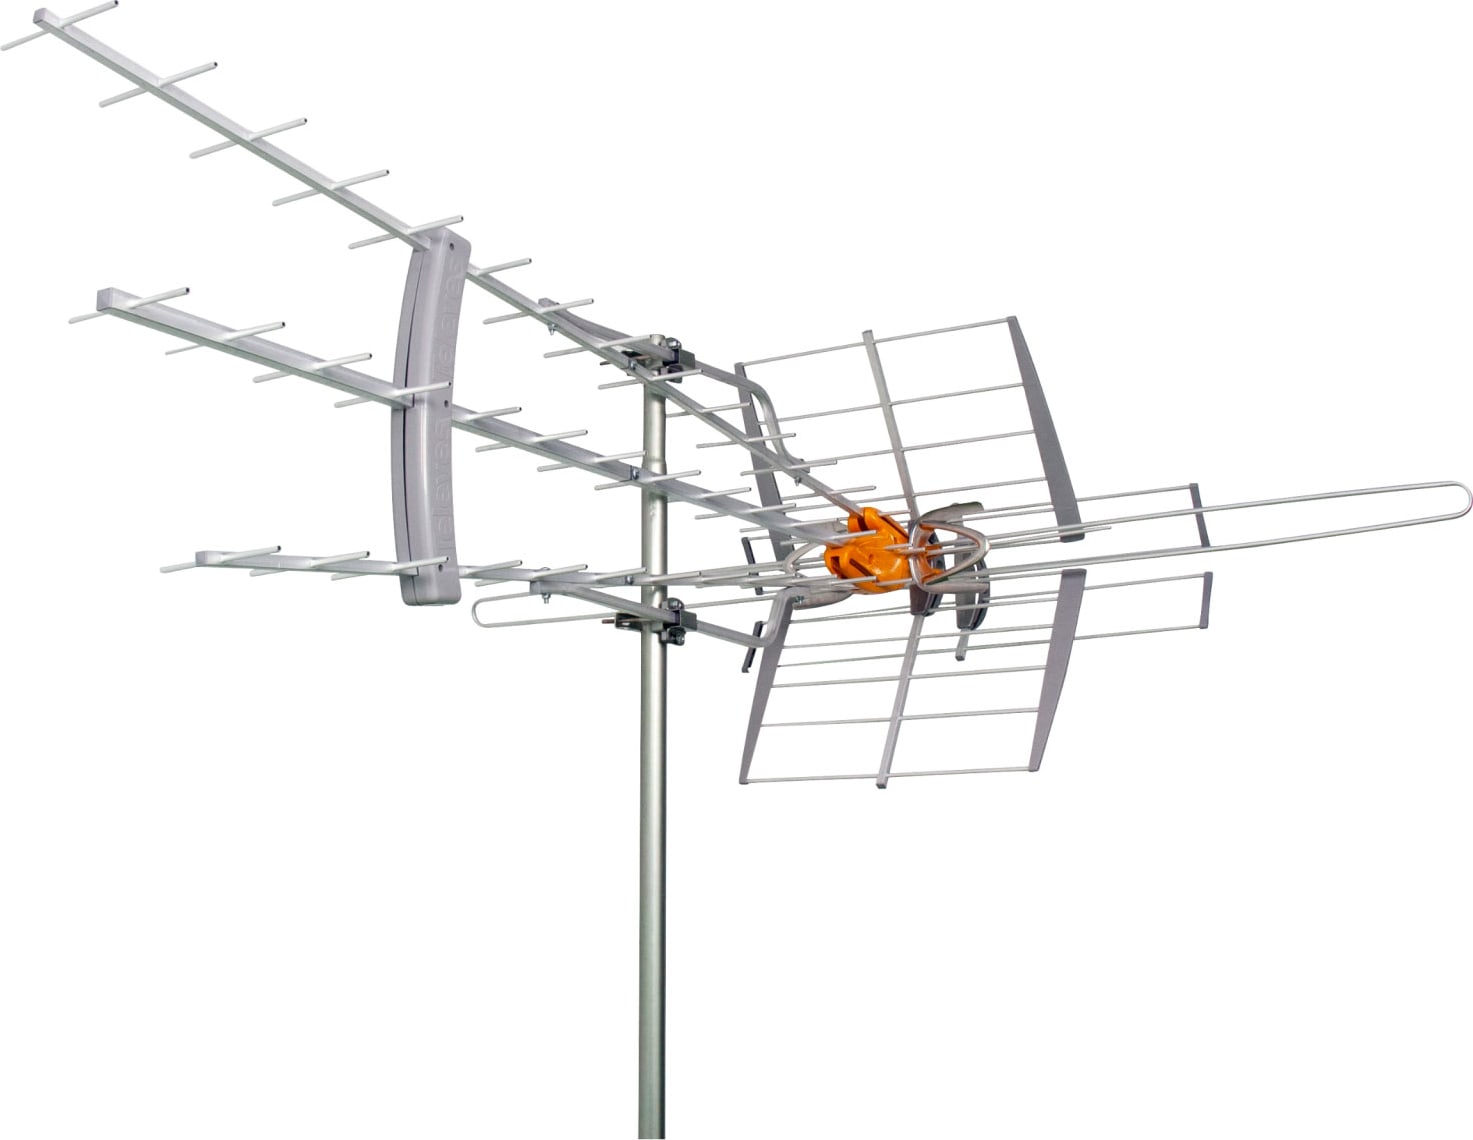 DAT BOSS antenna